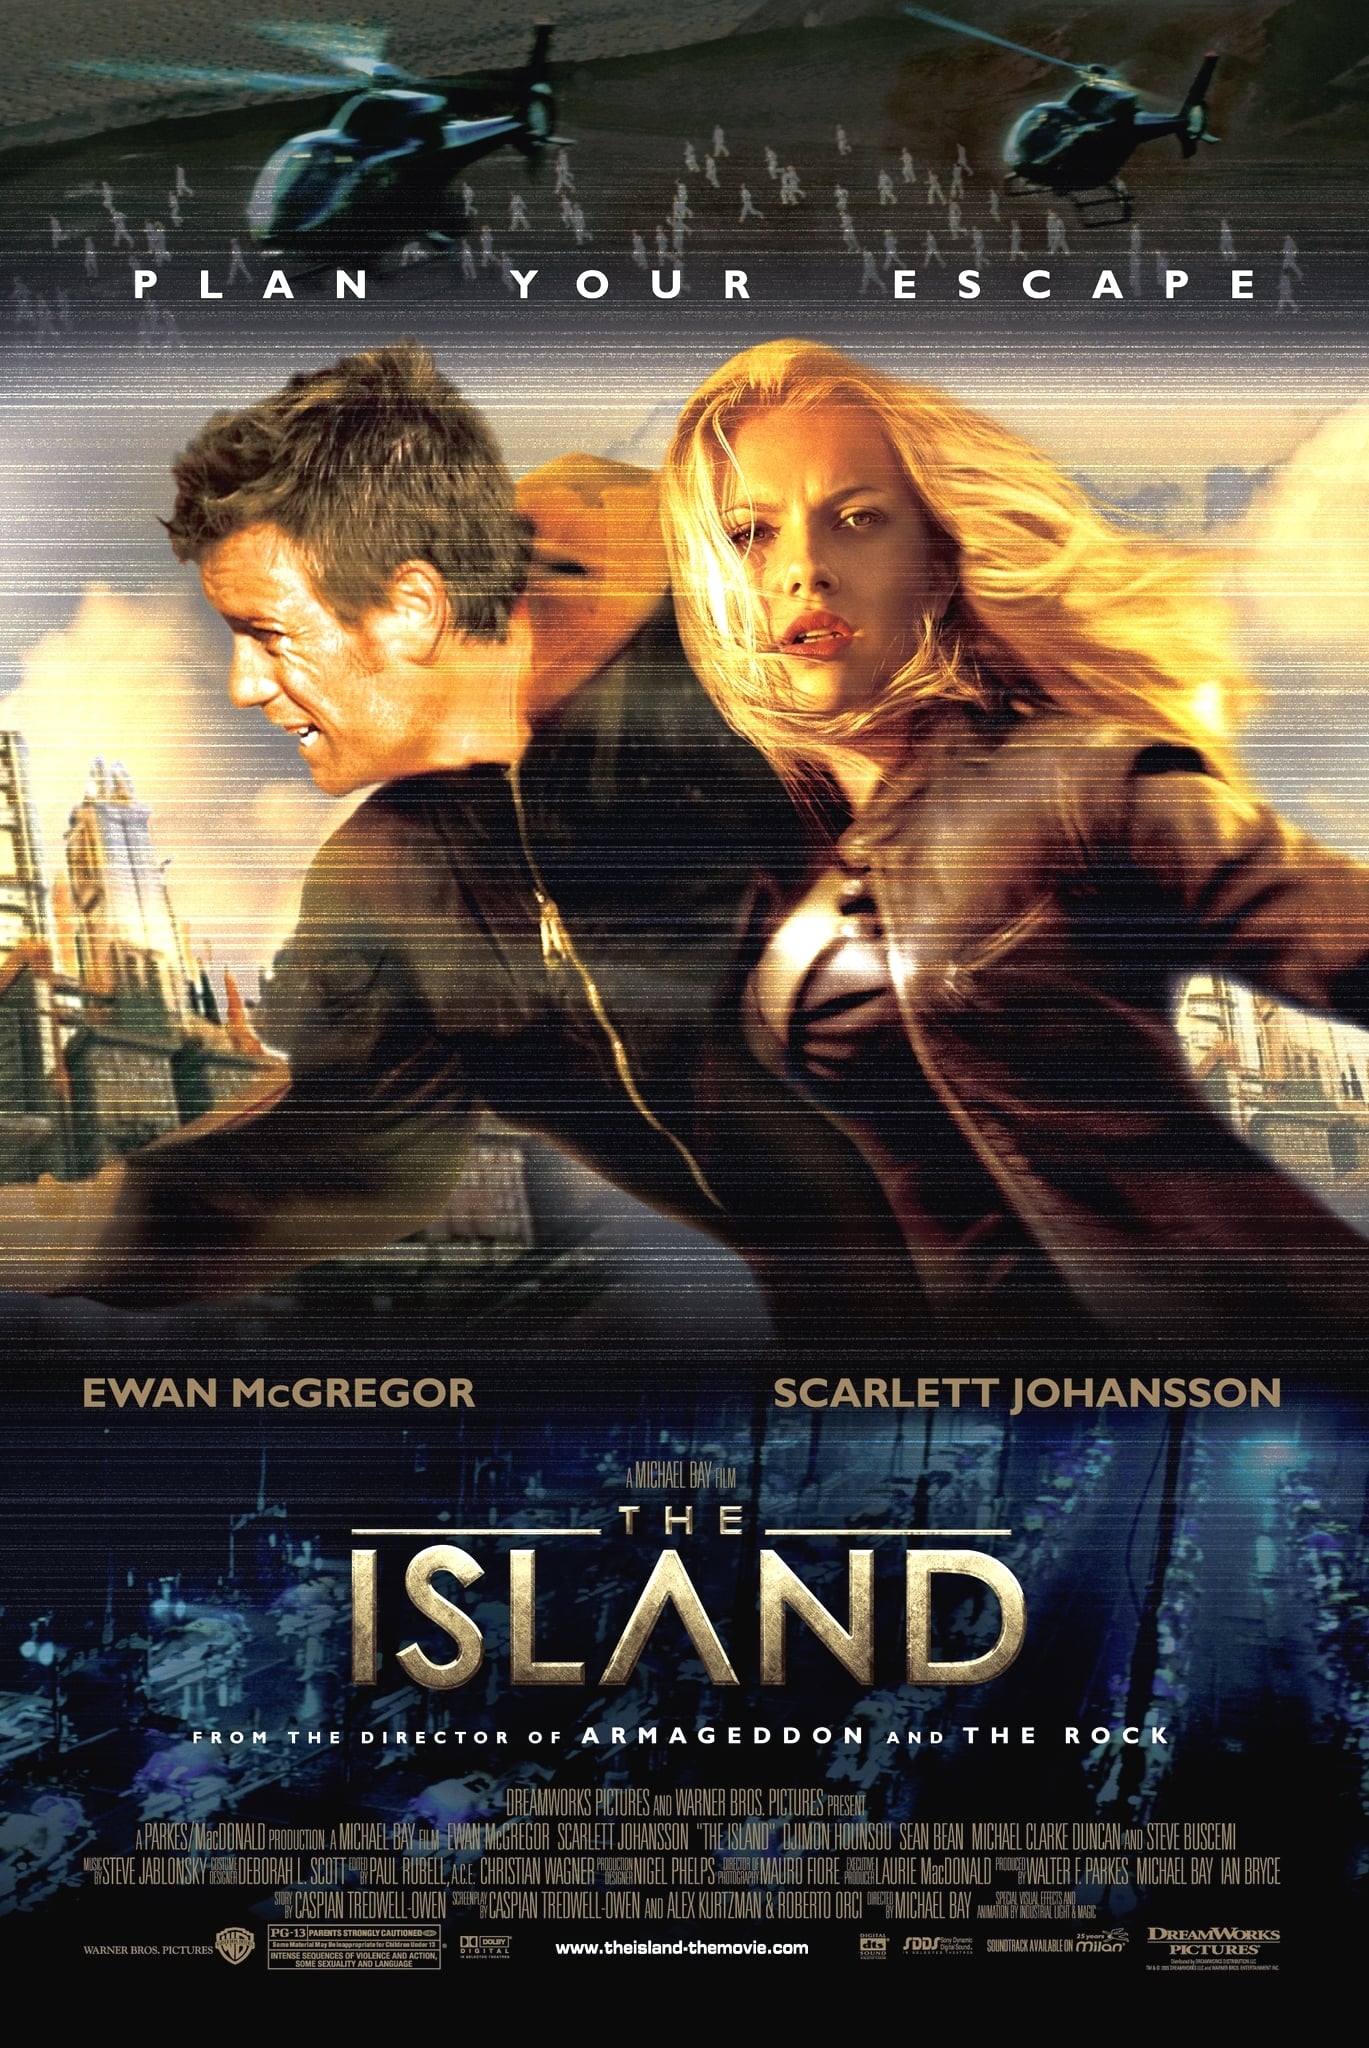 EN - The Island (2005) SCARLETT JOHANSSON